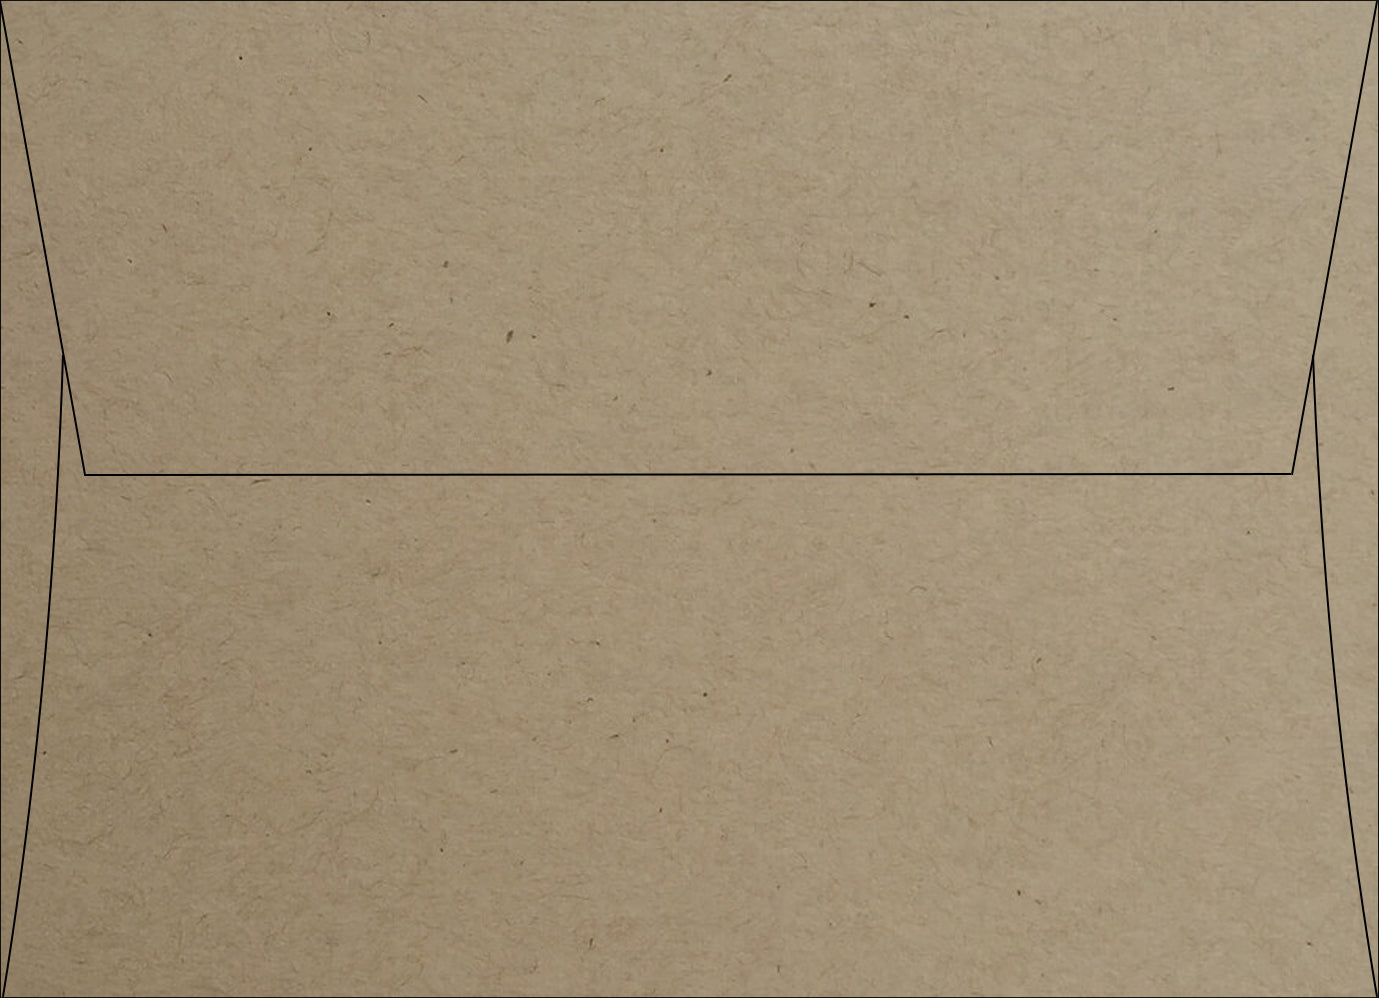 Speckletone Envelope Samples